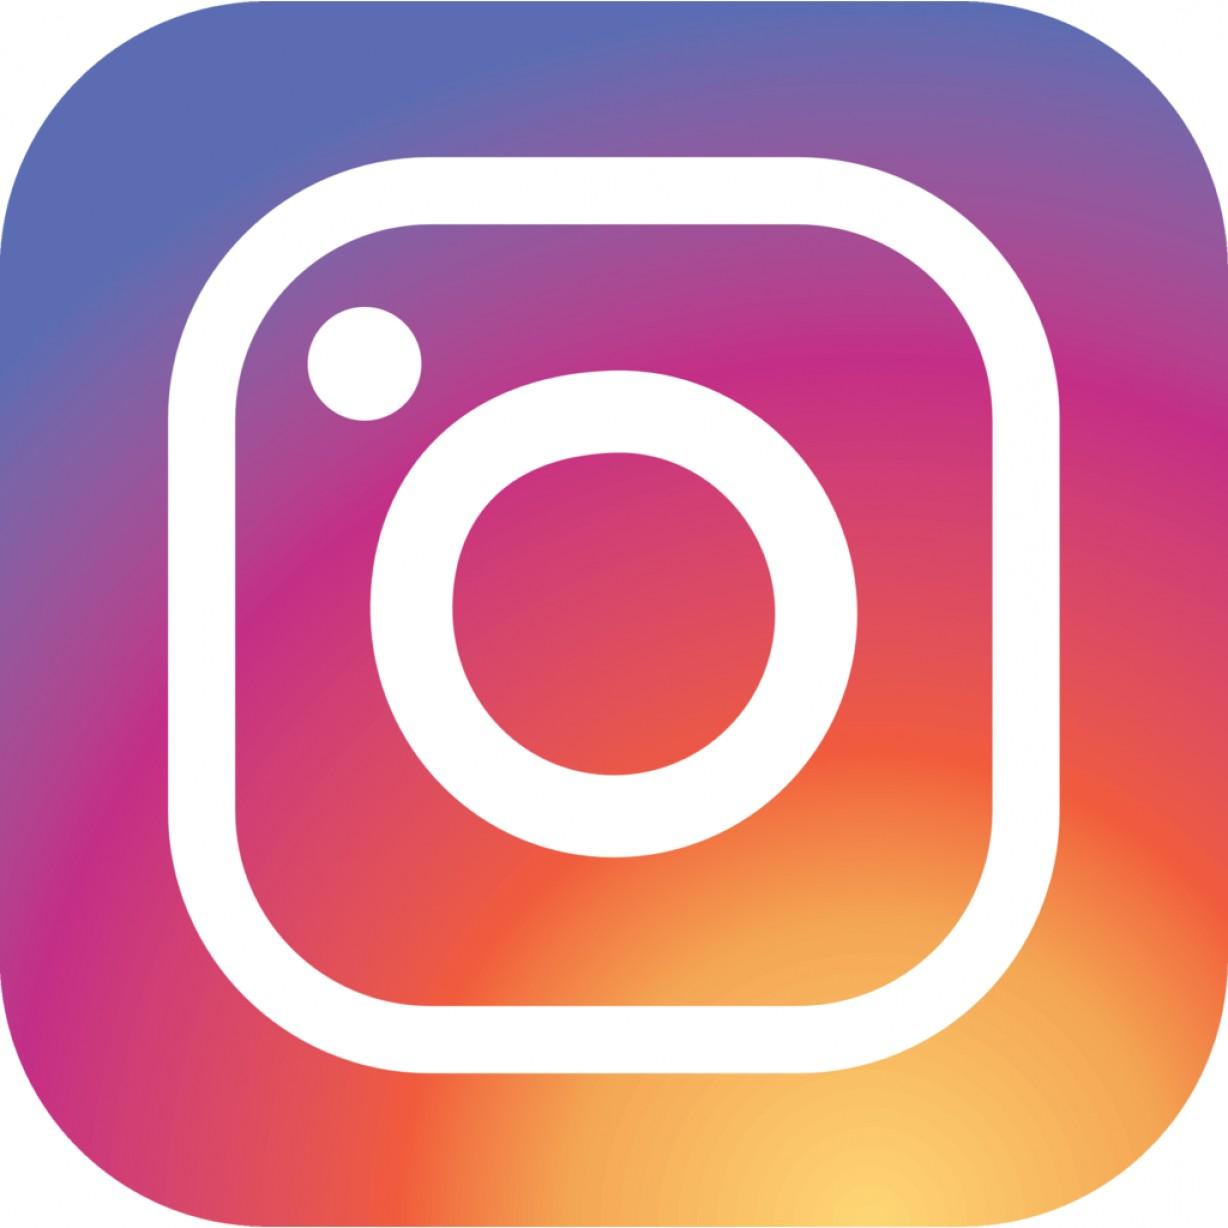 如何保存 Instagram 的图片？ - 《效率工具指南》 - 极客文档